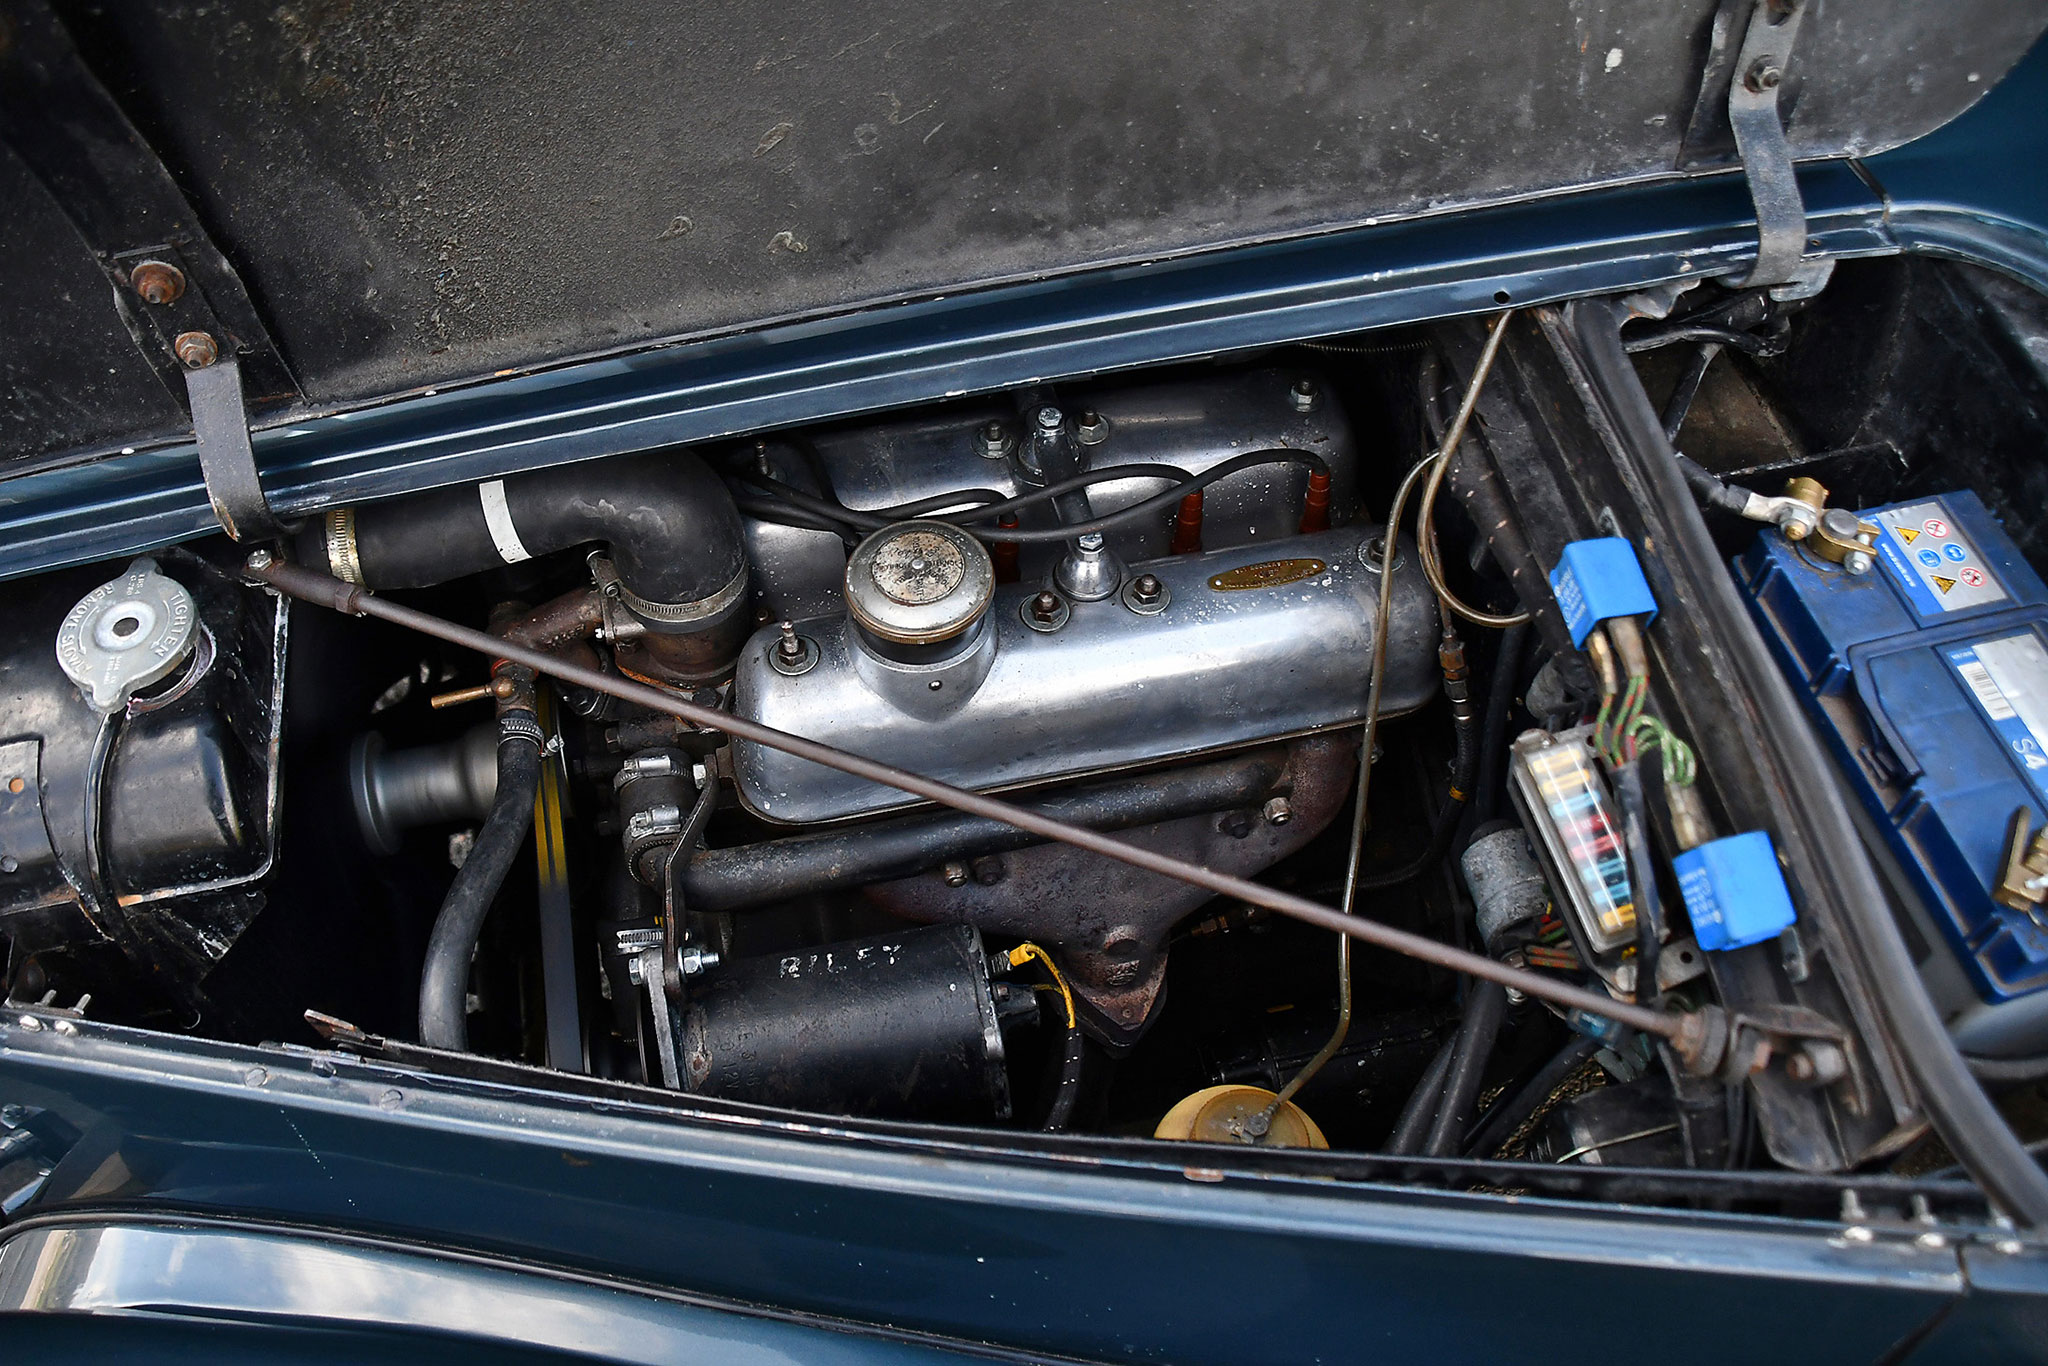 1954 Riley RME 1.5-Litre – moteur de 1496 cm³ et boîte manuelle à 4 rapports révision il y a environ 2000 kilomètres.